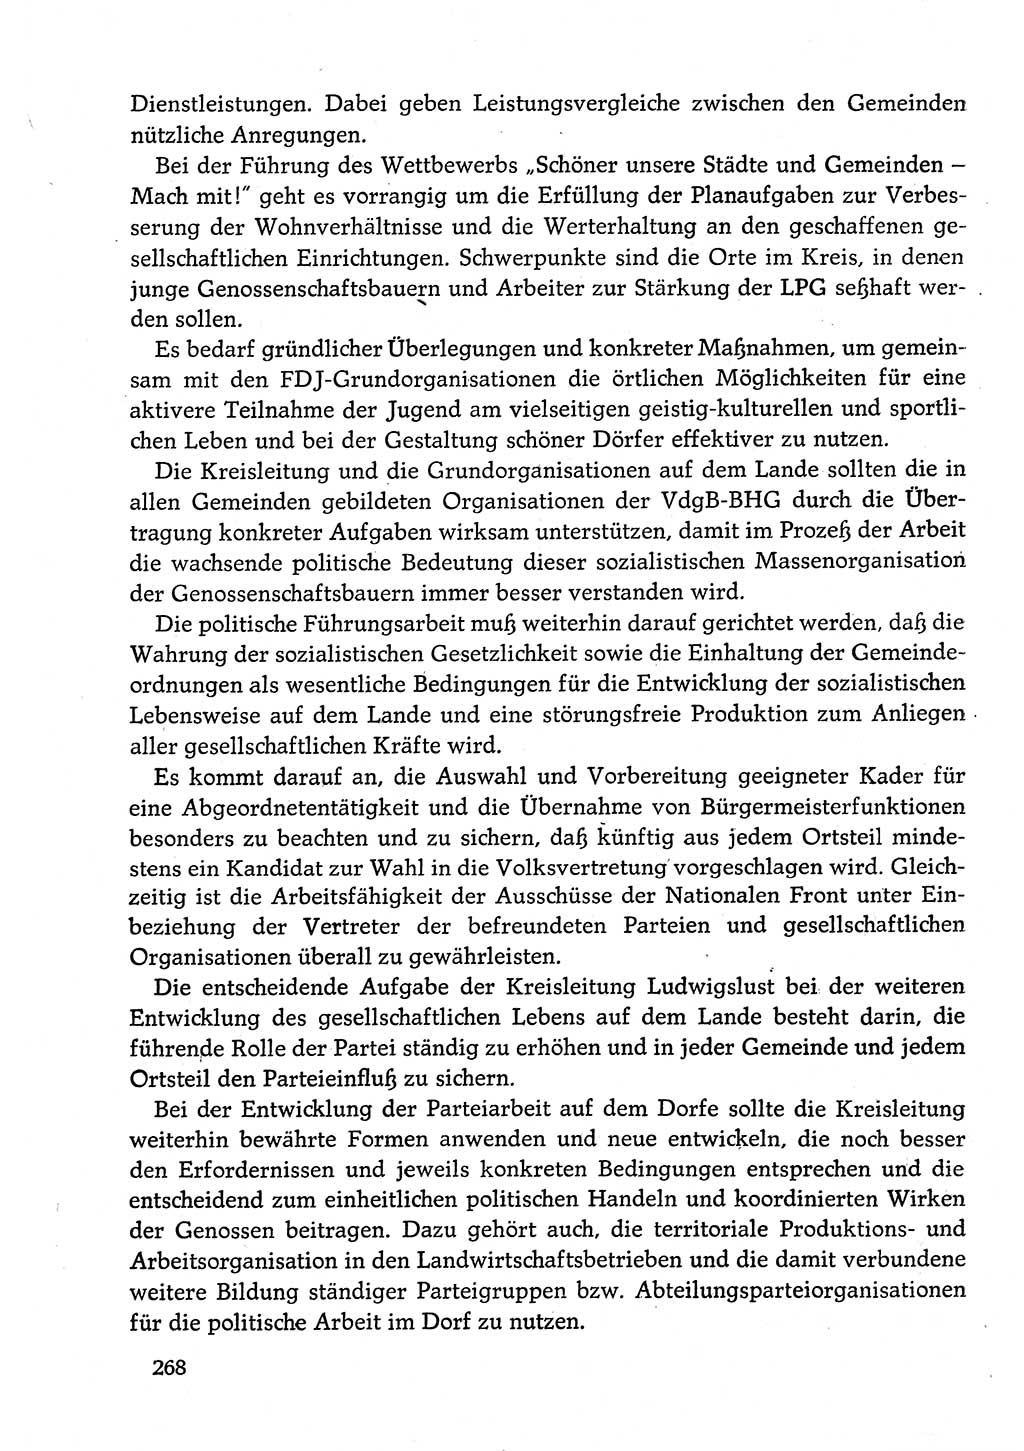 Dokumente der Sozialistischen Einheitspartei Deutschlands (SED) [Deutsche Demokratische Republik (DDR)] 1982-1983, Seite 268 (Dok. SED DDR 1982-1983, S. 268)